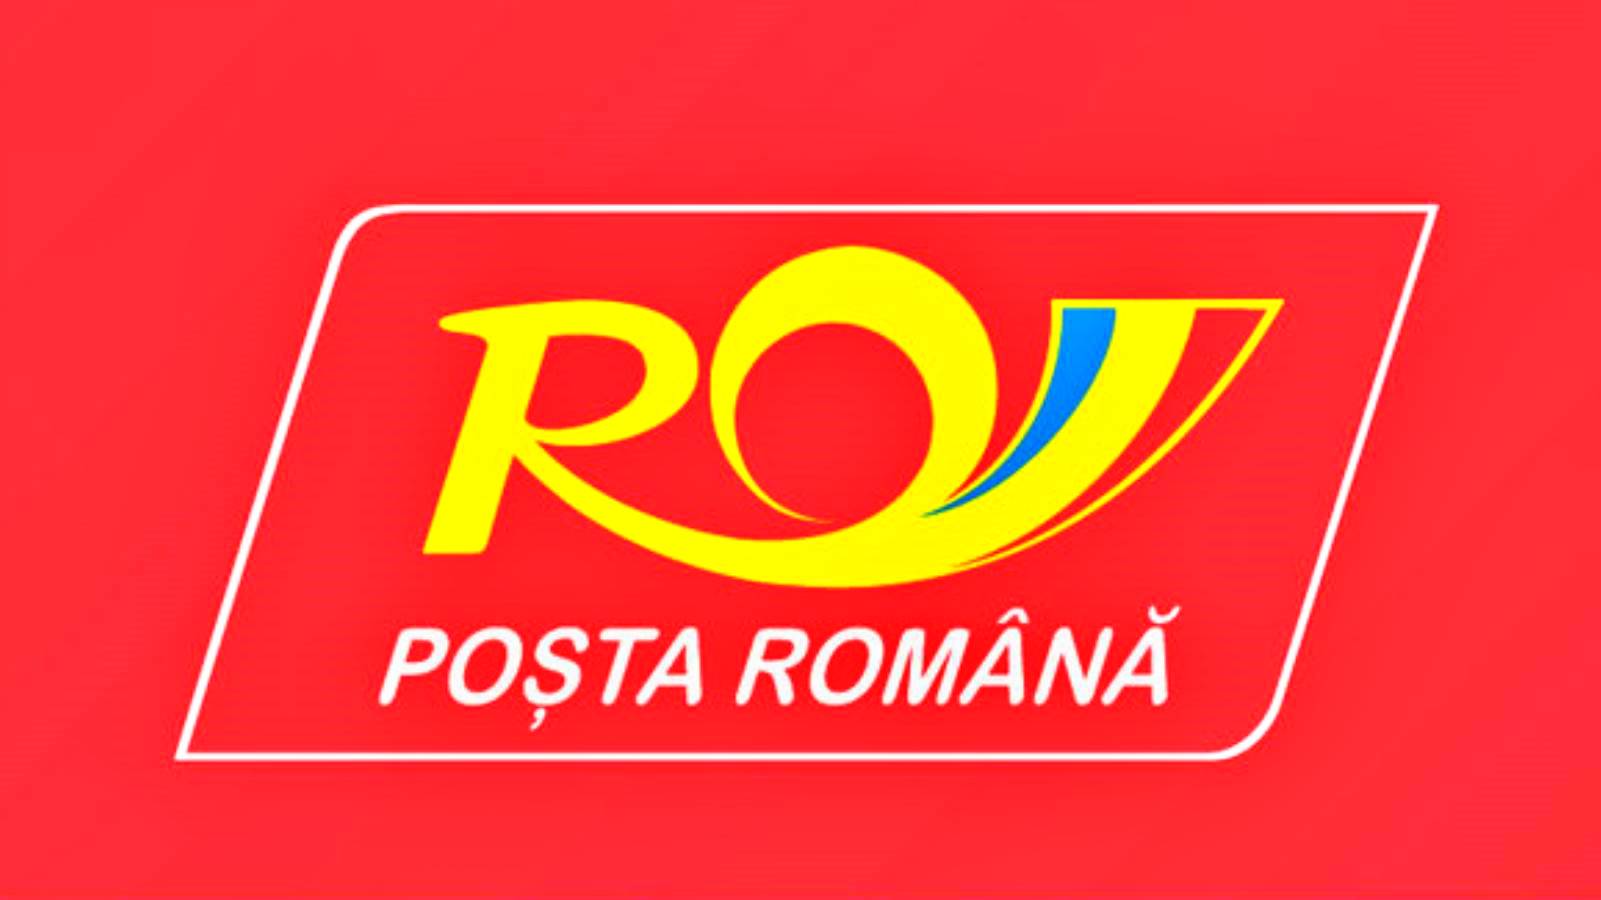 Rumänische Post Nachricht für Rumänen bezüglich vorteilhafter Preise für Sendungen